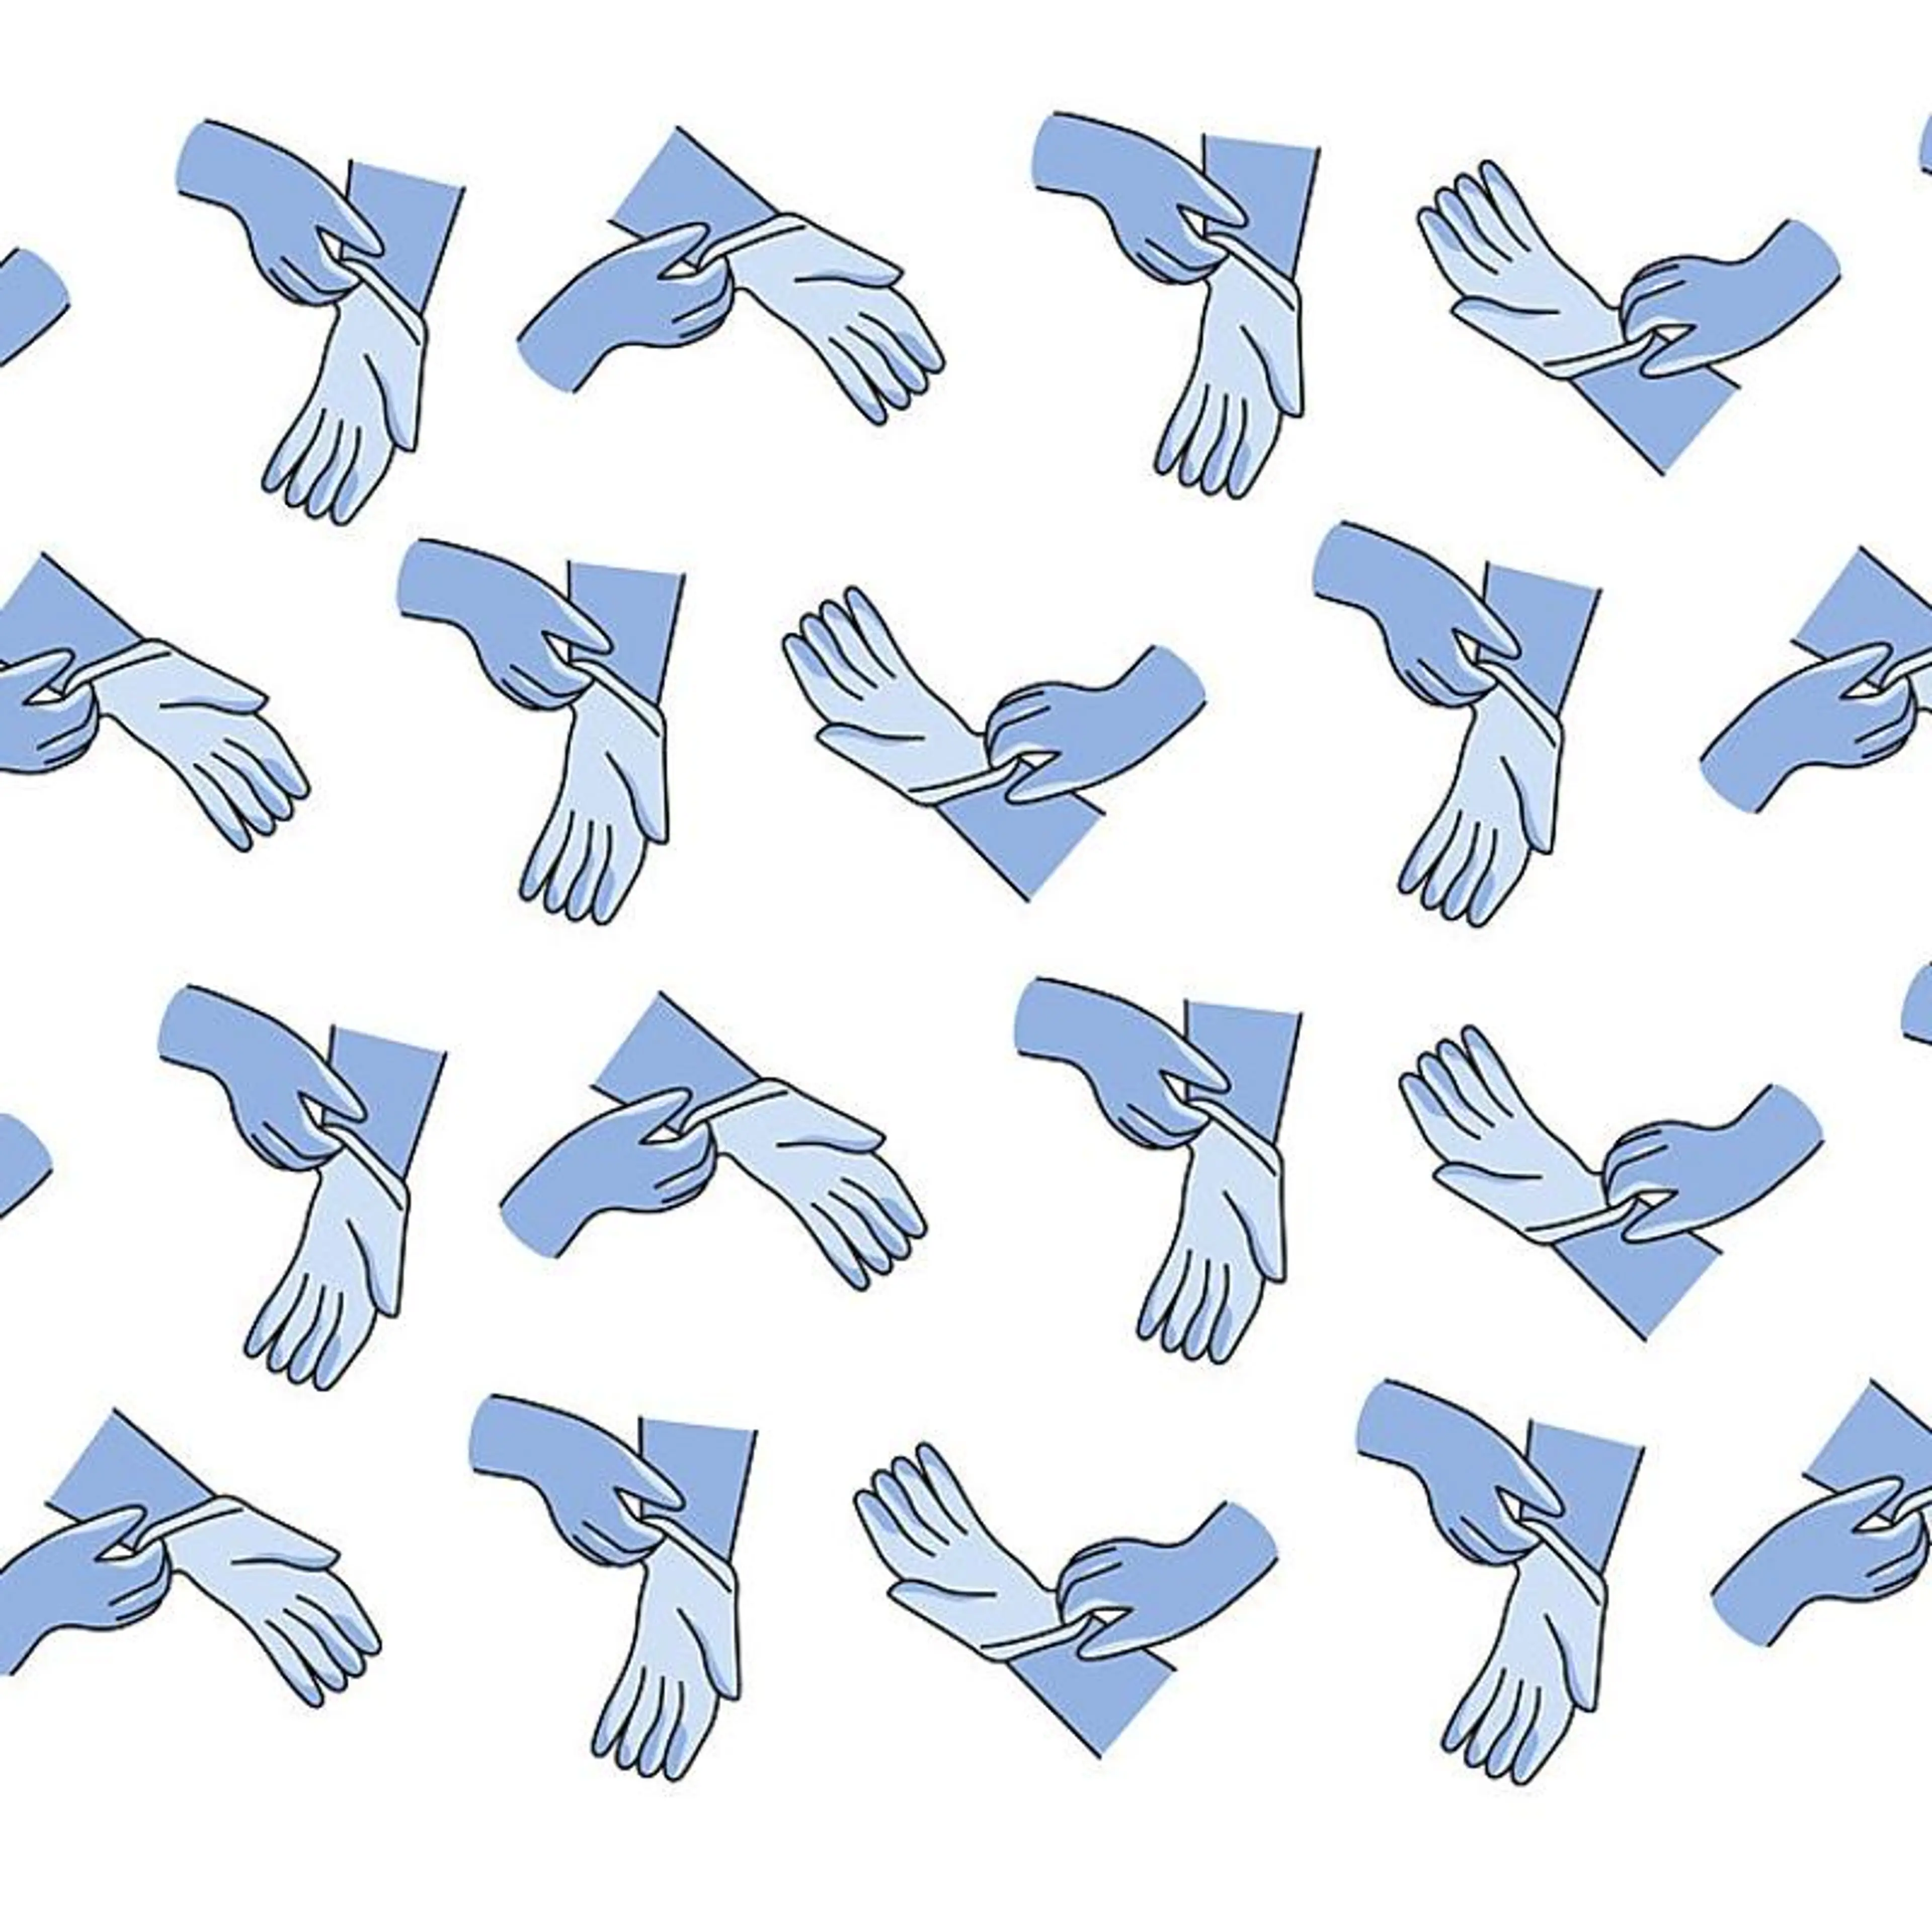 Overforbruk av hansker illustrert med masse hansker